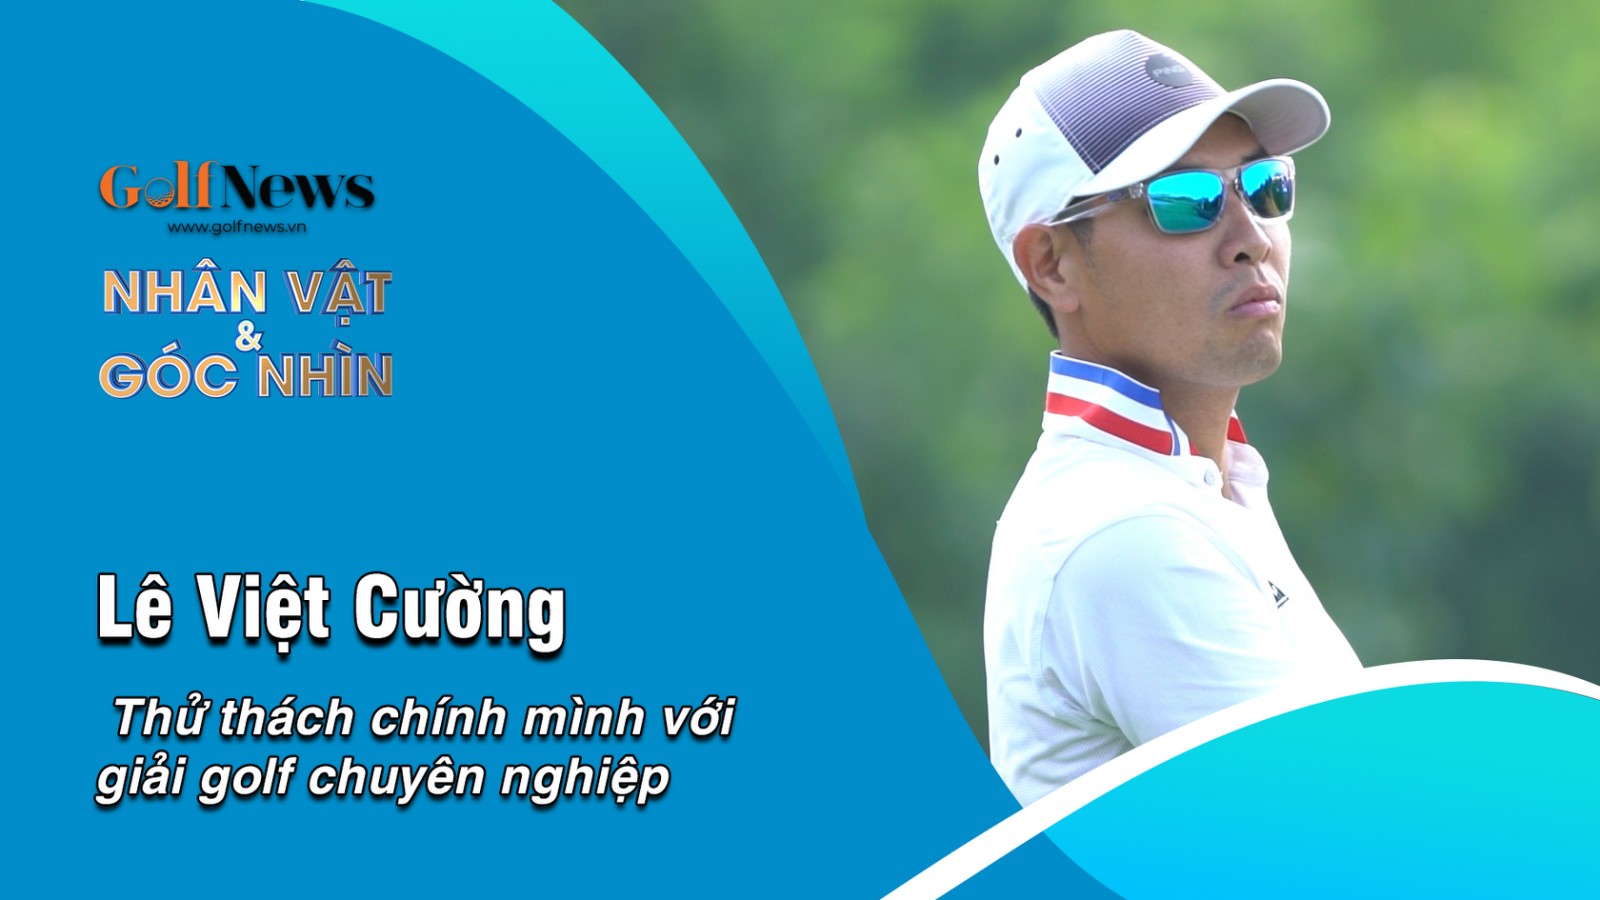 HLV Lê Việt Cường – Thử thách chính mình với giải golf chuyên nghiệp